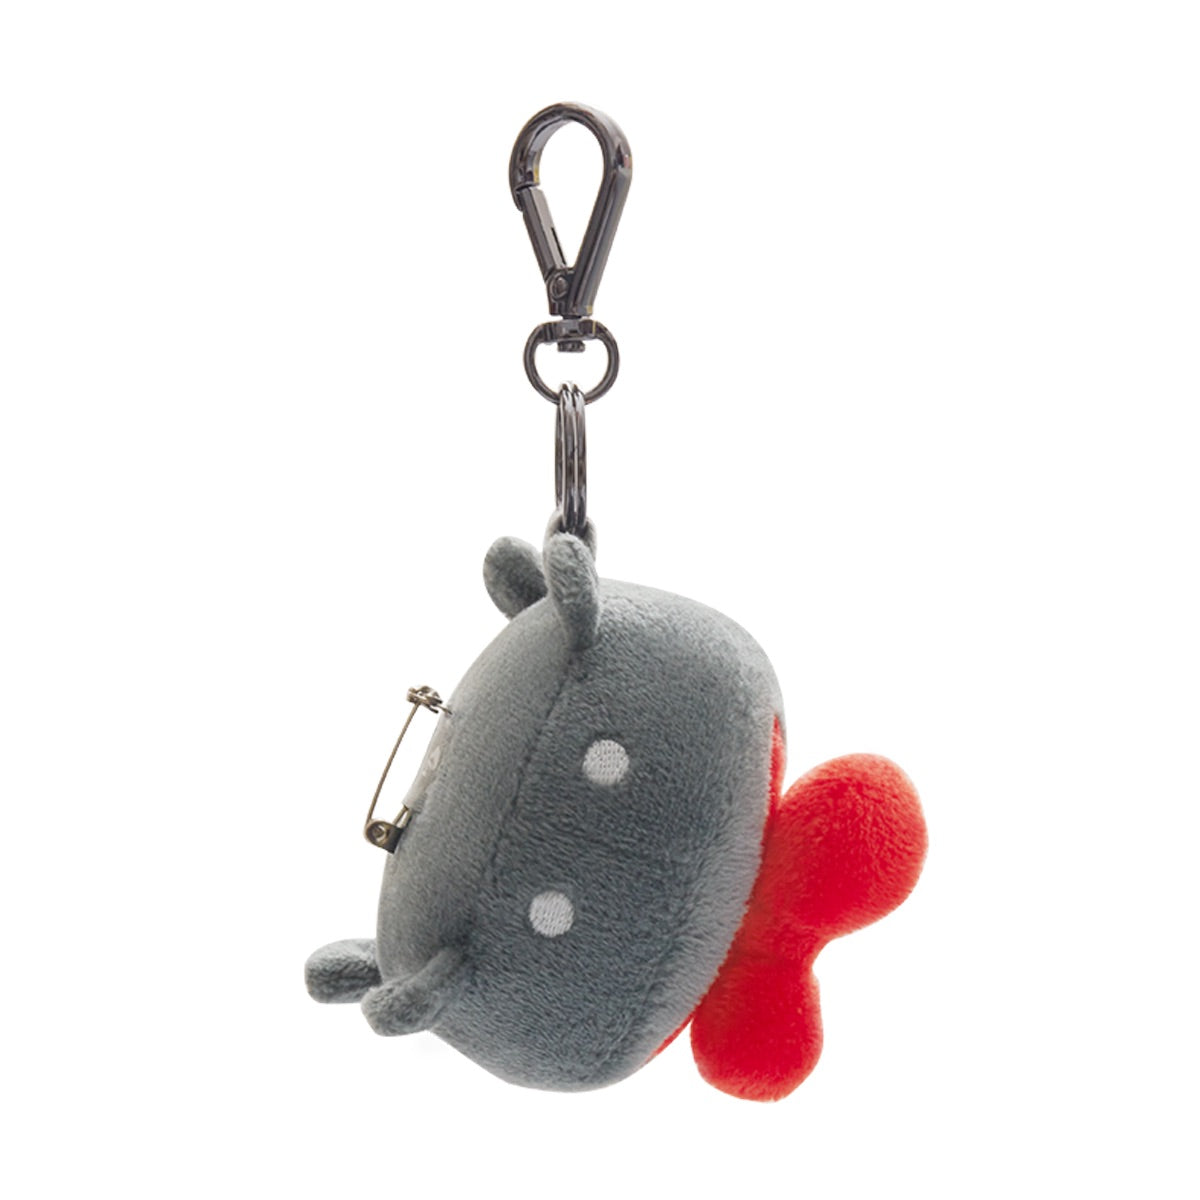 Pom Pom Keychain Cute Animal Crab Plush Ornament Creative Keychain